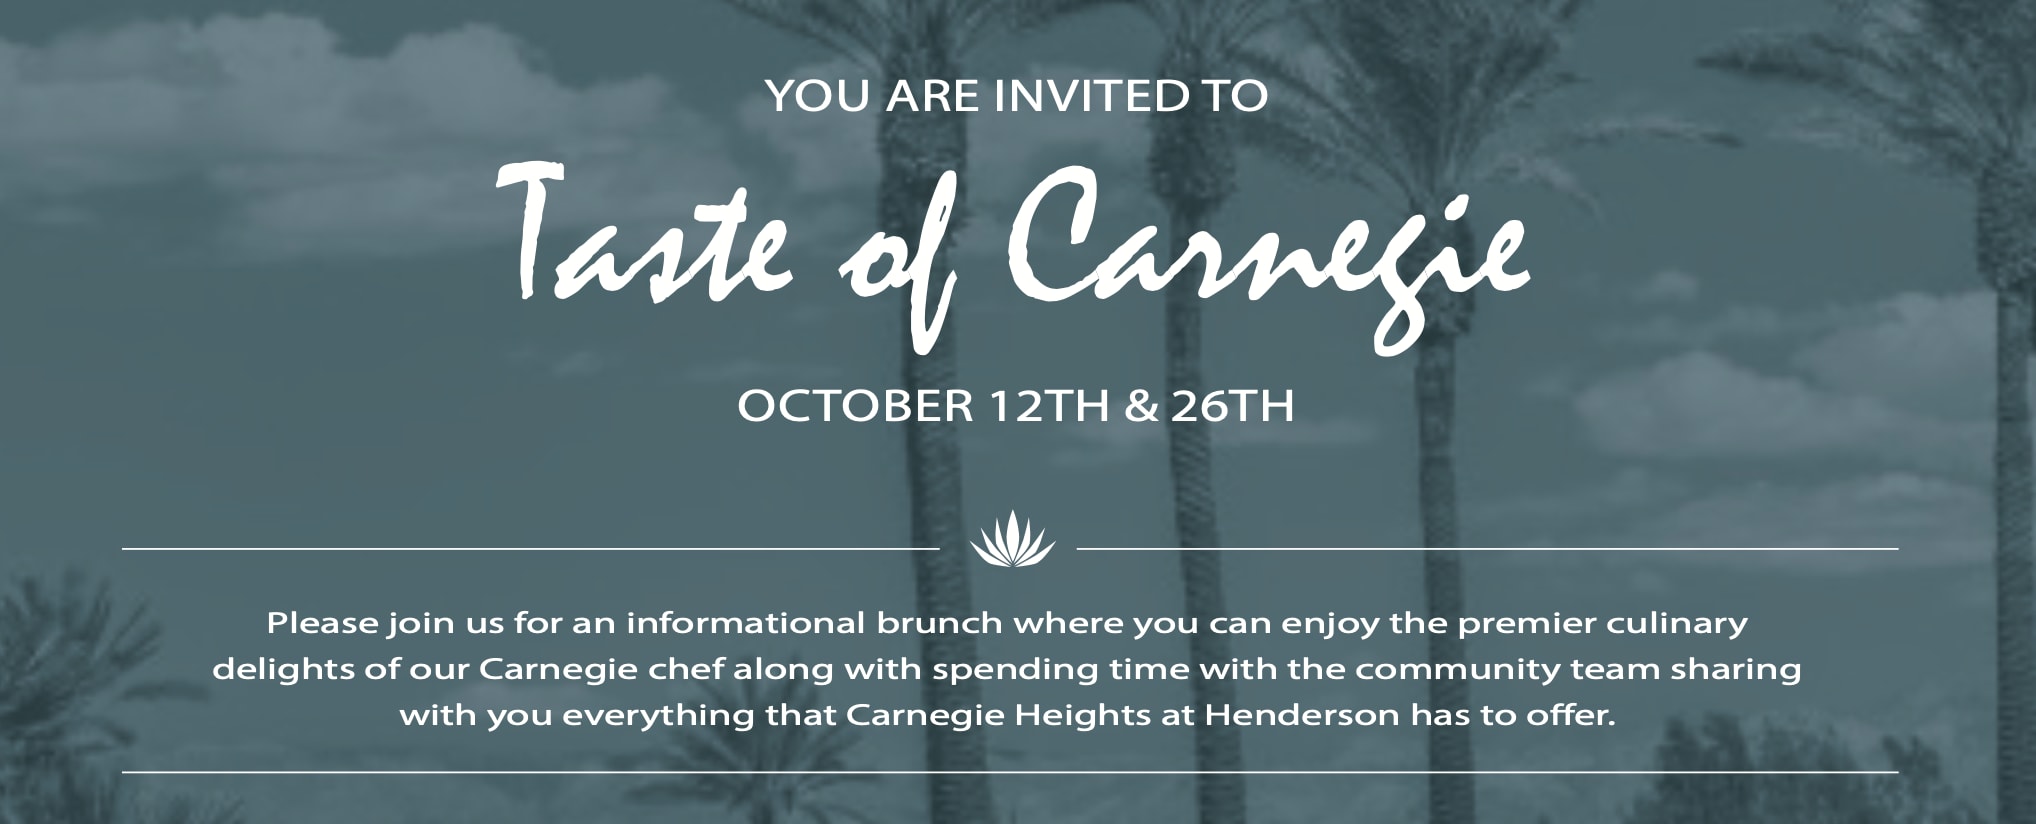 Taste of Carnegie event flyer